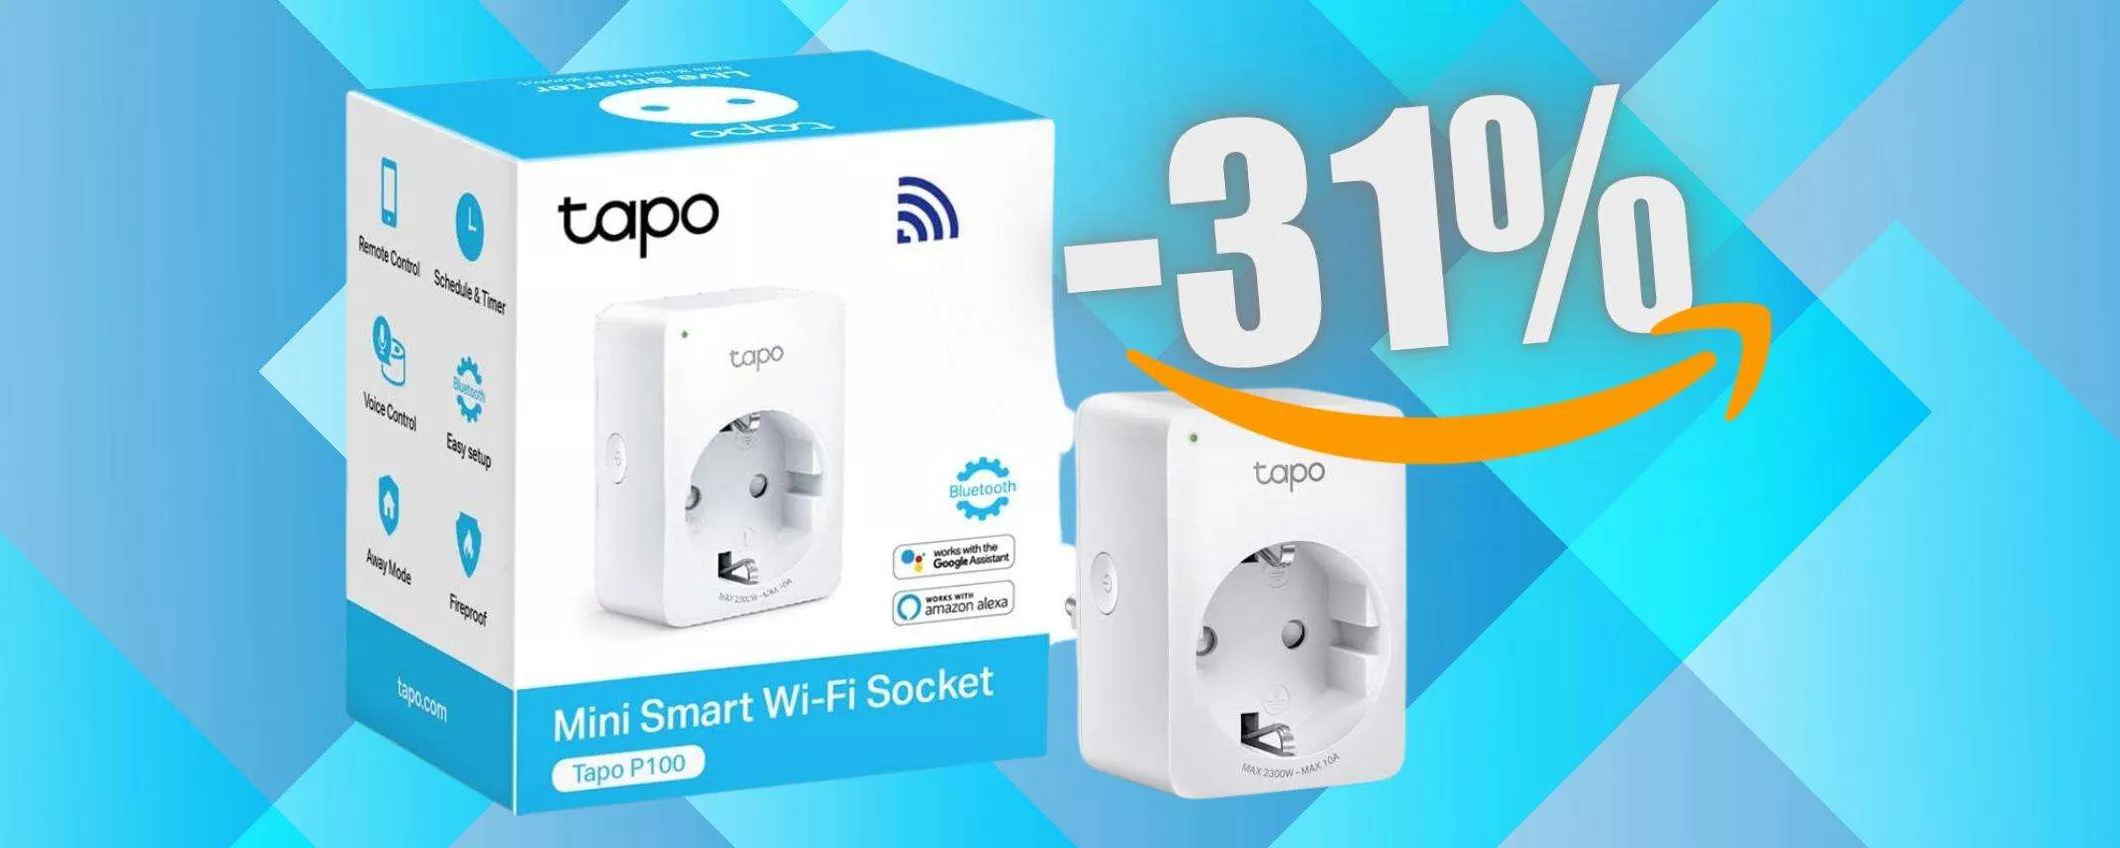 MENO di 9€ per la presa WiFi TP-Link, tutto intelligente (Amazon)